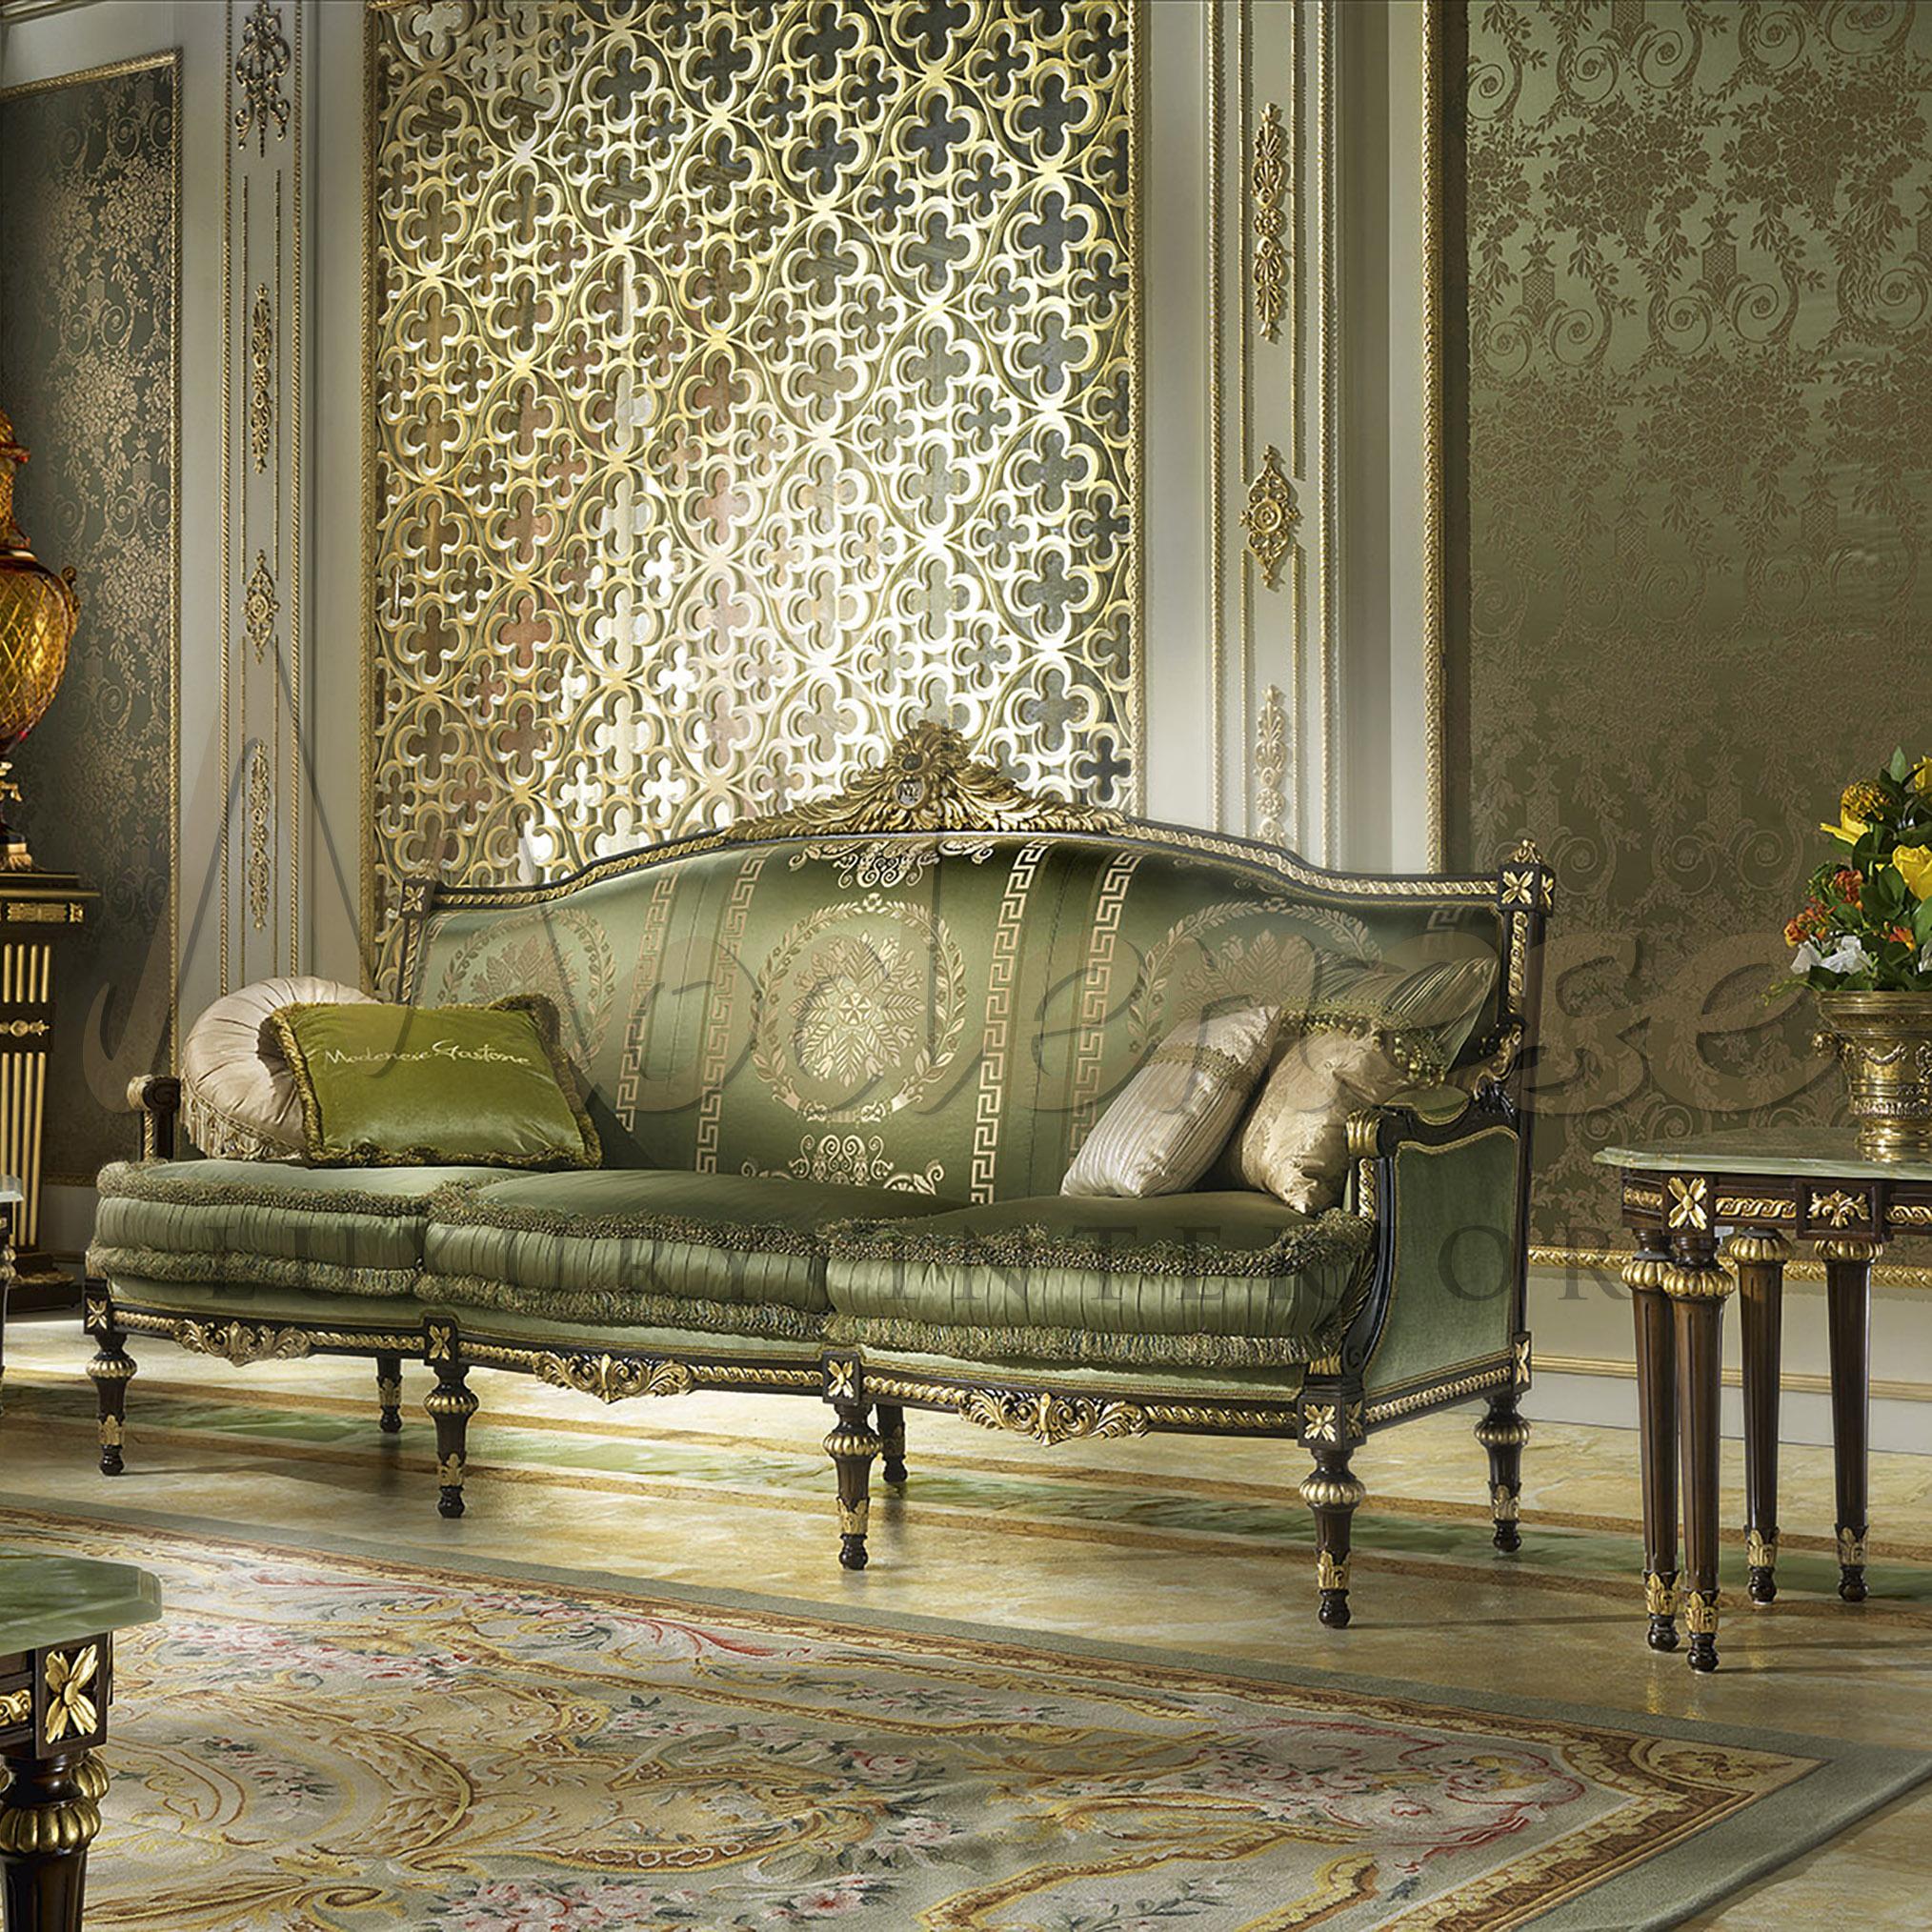 Canapé italien de style victorien classique, ce luxueux canapé trois places est recouvert d'un tissu velouté luxueux. Le mélange de tissus de la plus haute qualité dans la teinte verte intemporelle, avec l'élégante touche d'or du design. L'assise